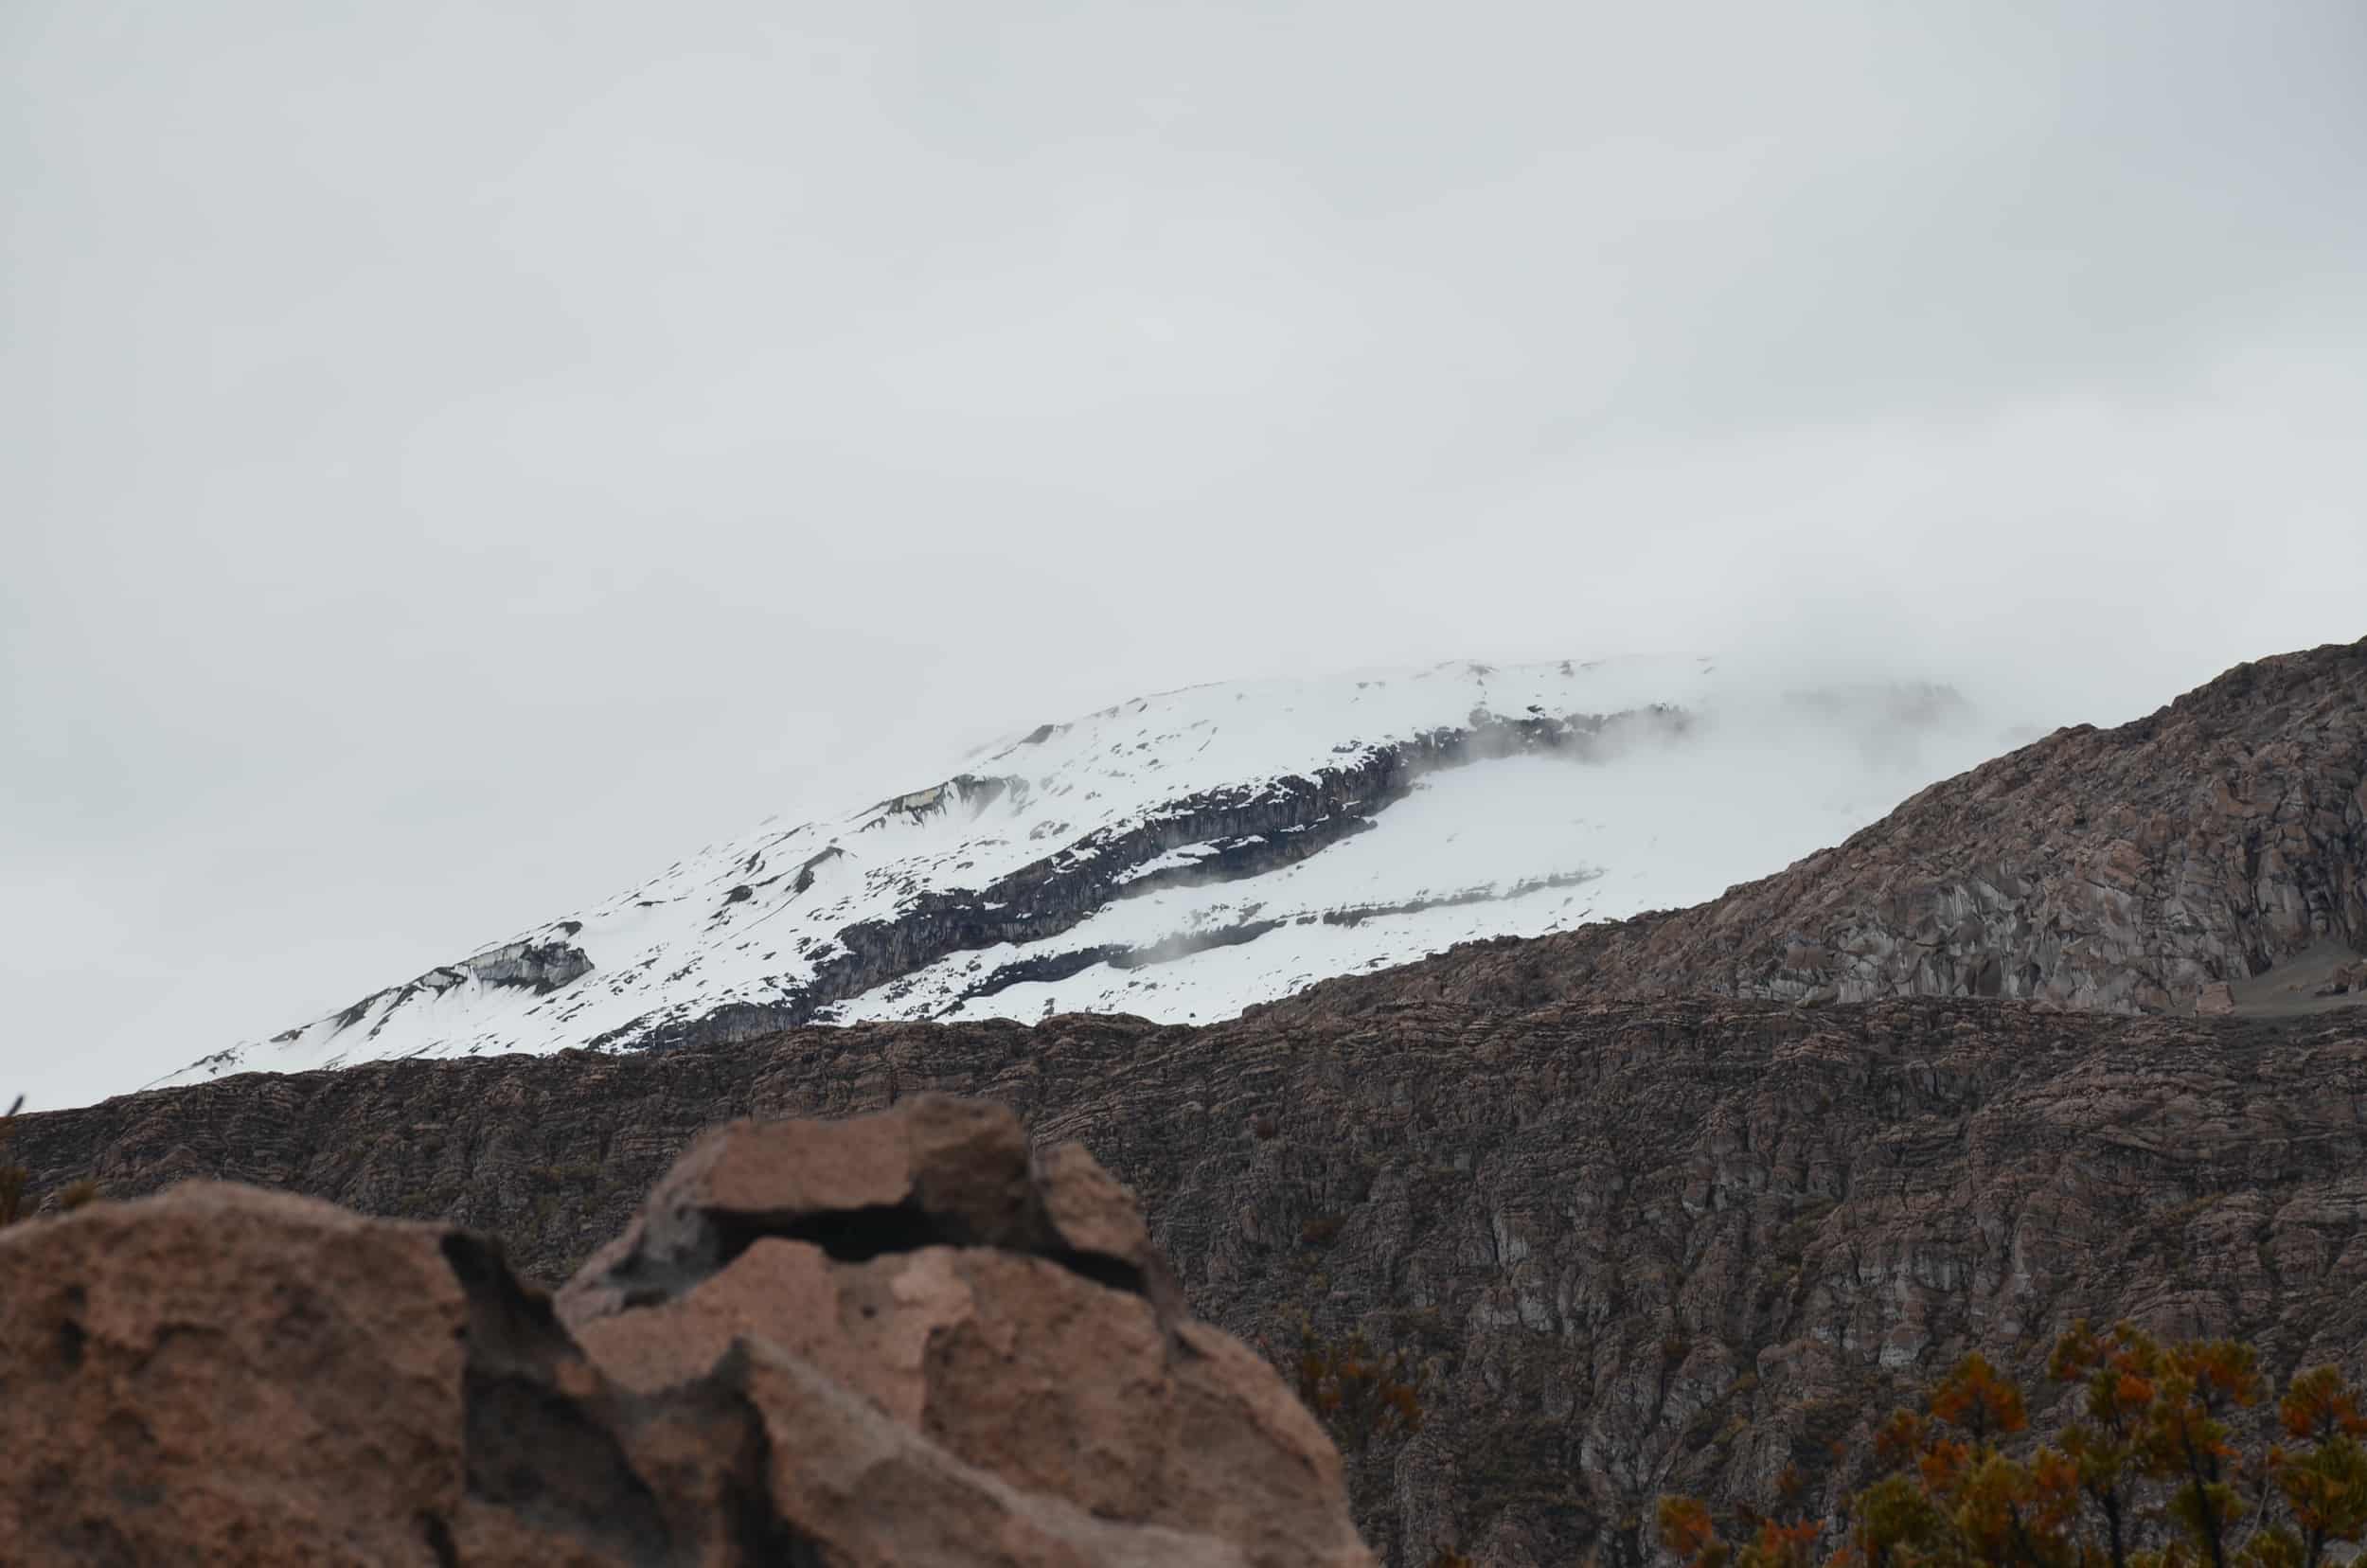 Nevado del Ruiz at Los Nevados National Park in Colombia